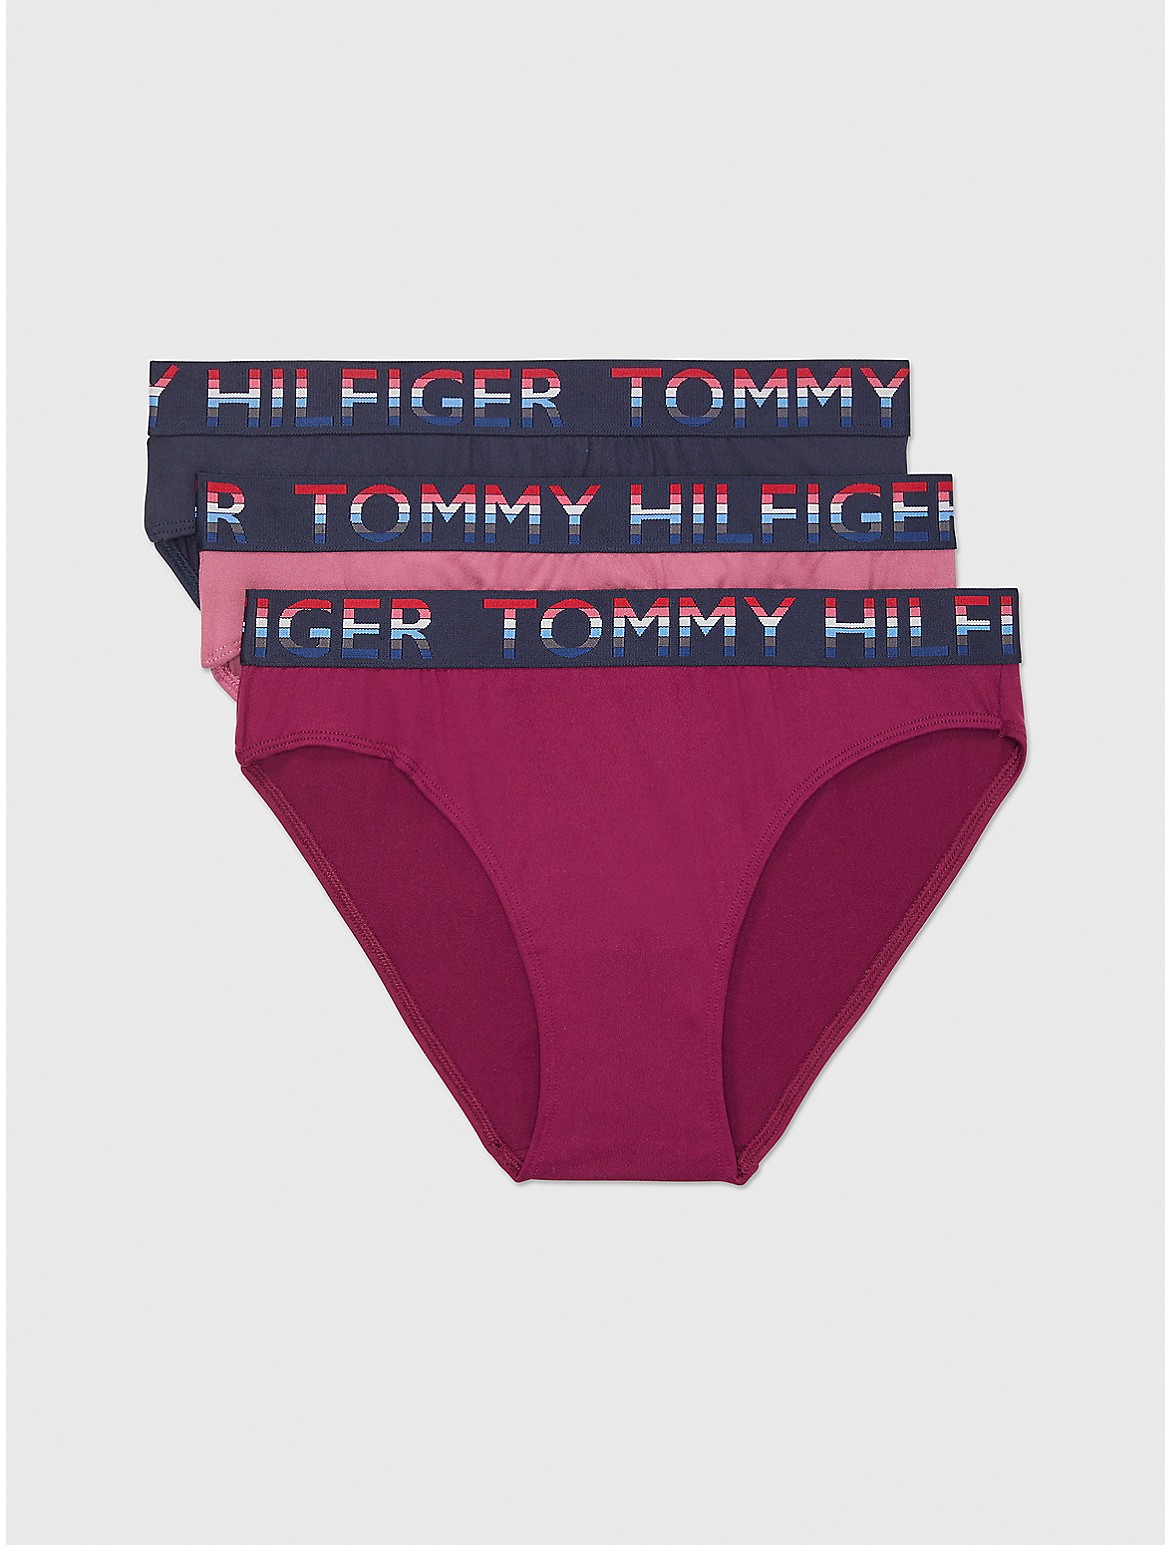 Tommy Hilfiger Women's Microfiber Bikini 3-Pack - Multi - XL